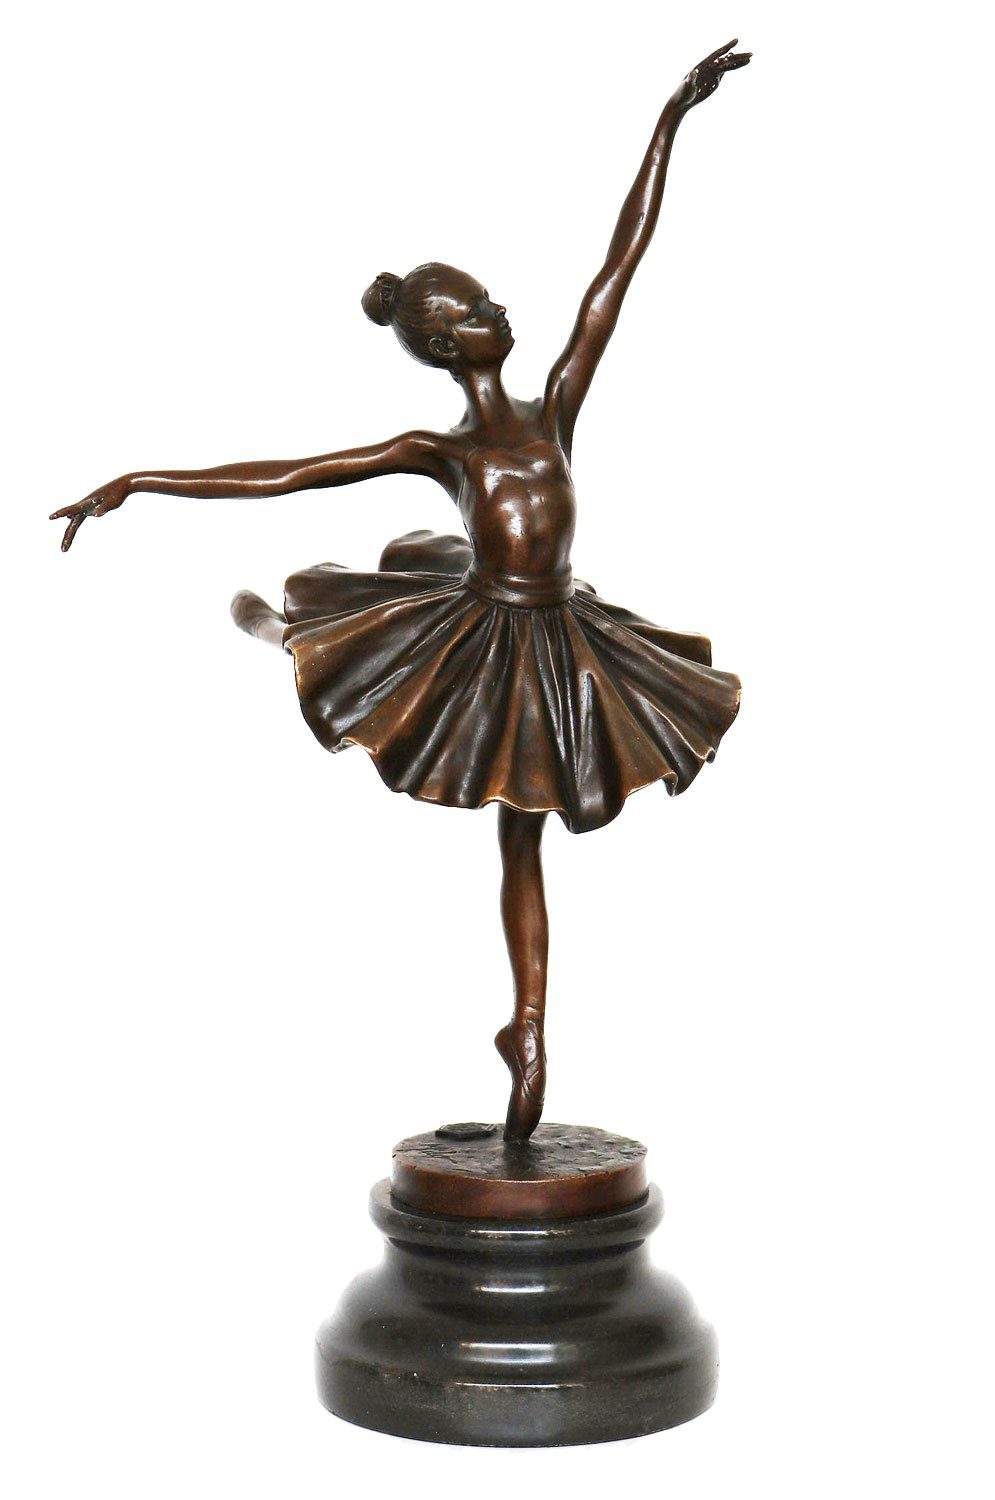 Aubaho Skulptur Bronzeskulptur Tänzerin Figur Repl Ballerina Ballett Degas nach Bronze